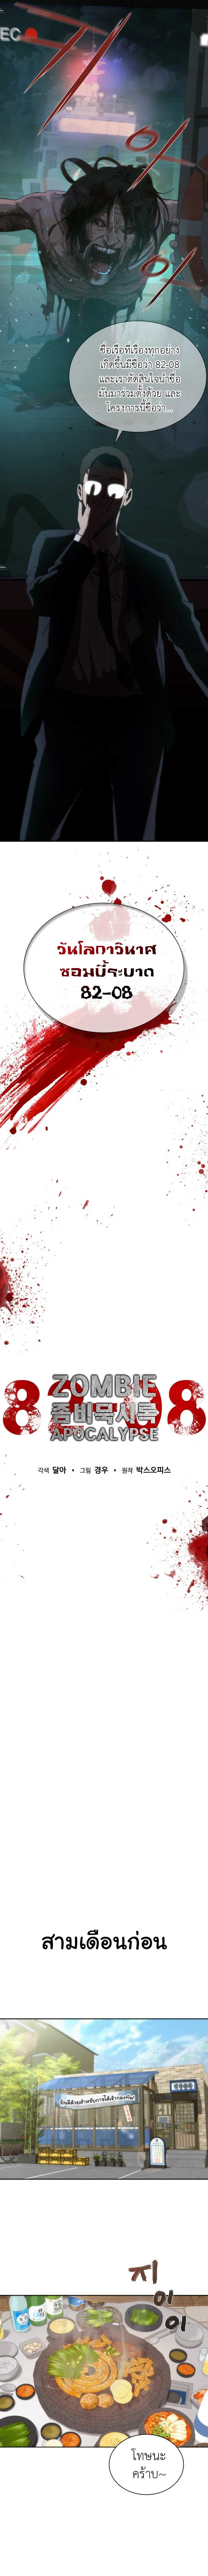 Zombie Apocalypse 1 06